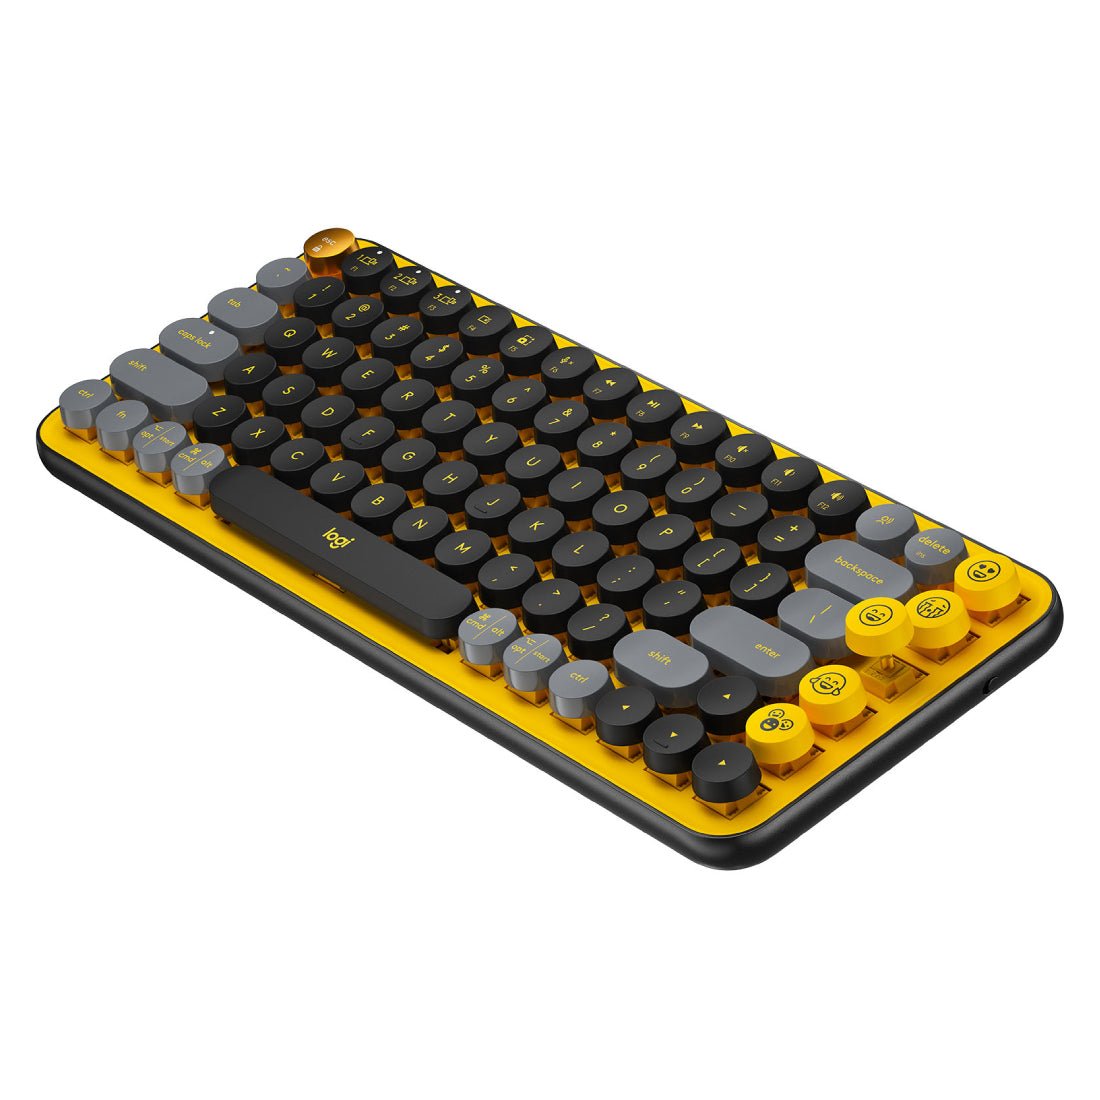 Logitech POP Keys Wireless Mechanical Keyboard - Blast Yellow - Store 974 | ستور ٩٧٤